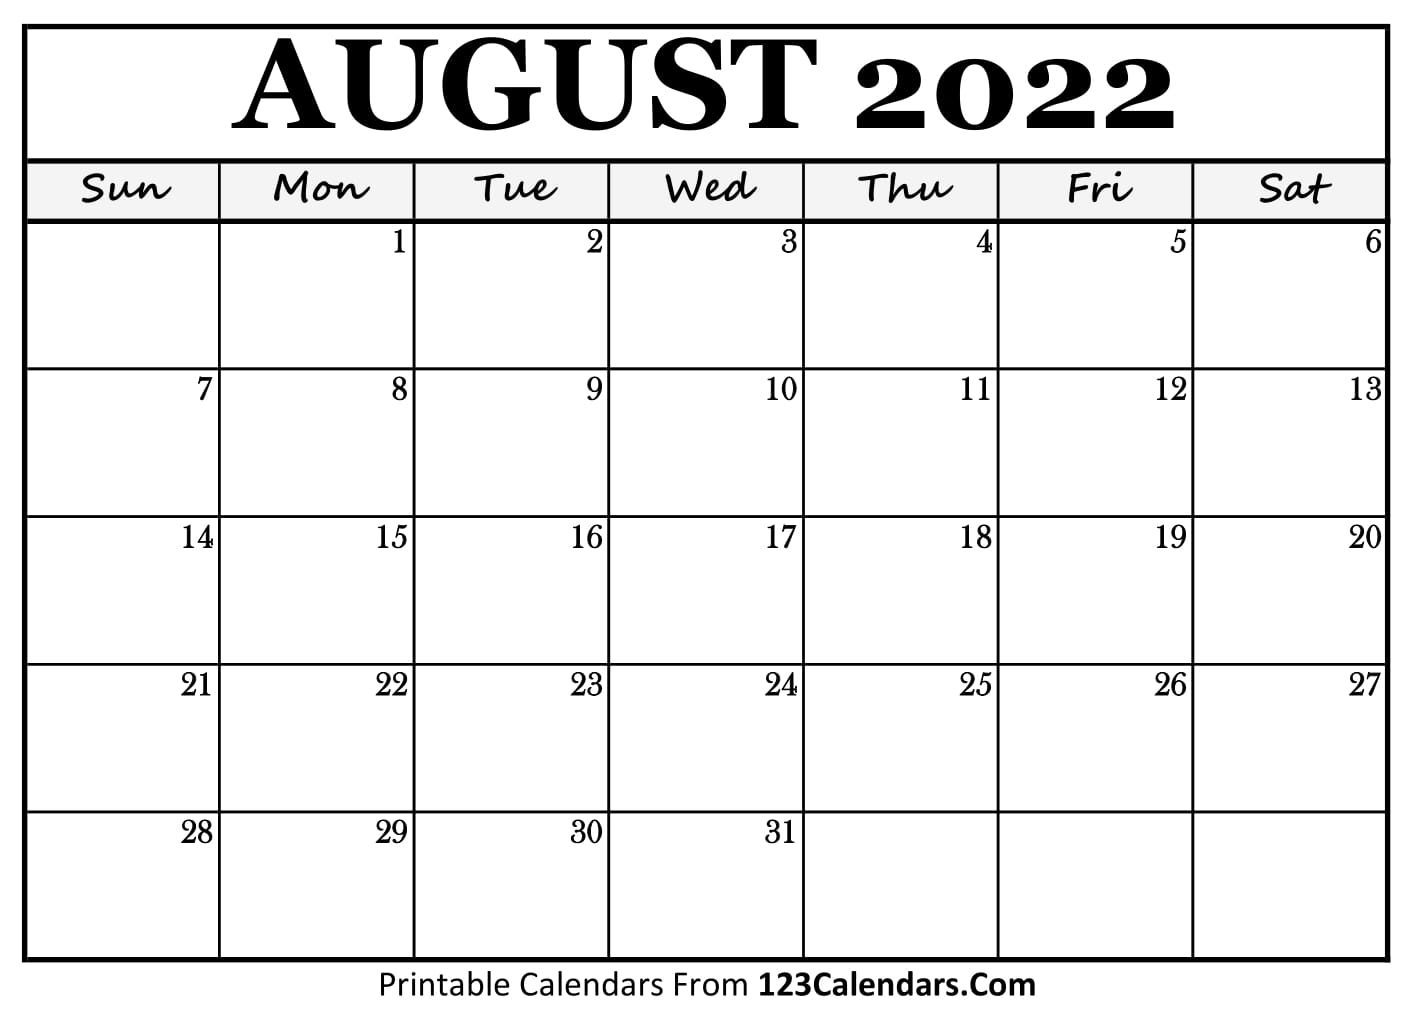 may-2022-calendar-printable-pdf-us-holidays-2022-may-2022-calendar